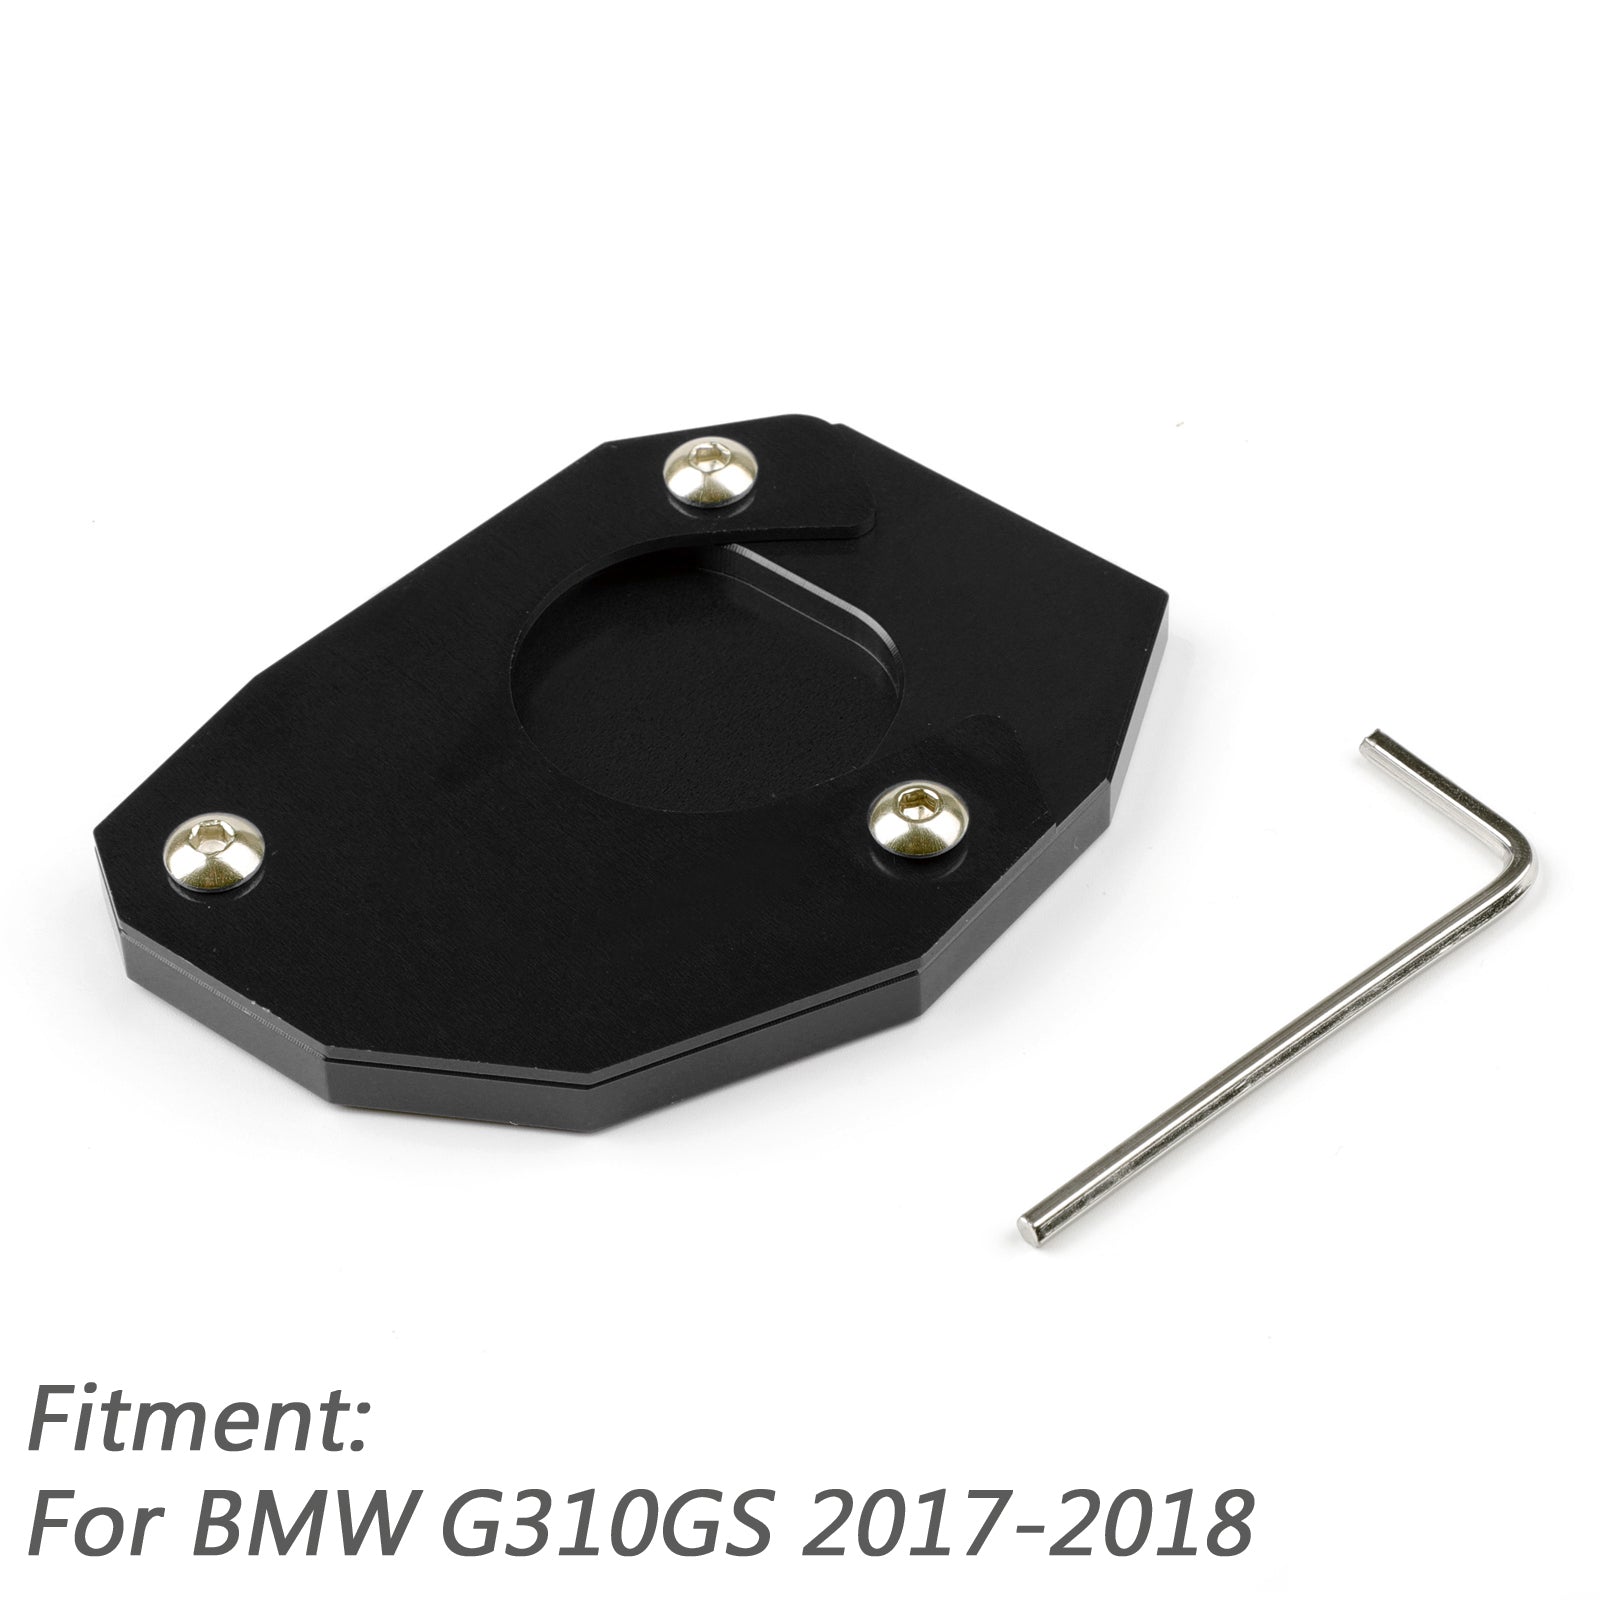 Soporte de extensión de soporte de placa lateral de pata de cabra CNC para BMW G310GS 2017-18 genérico